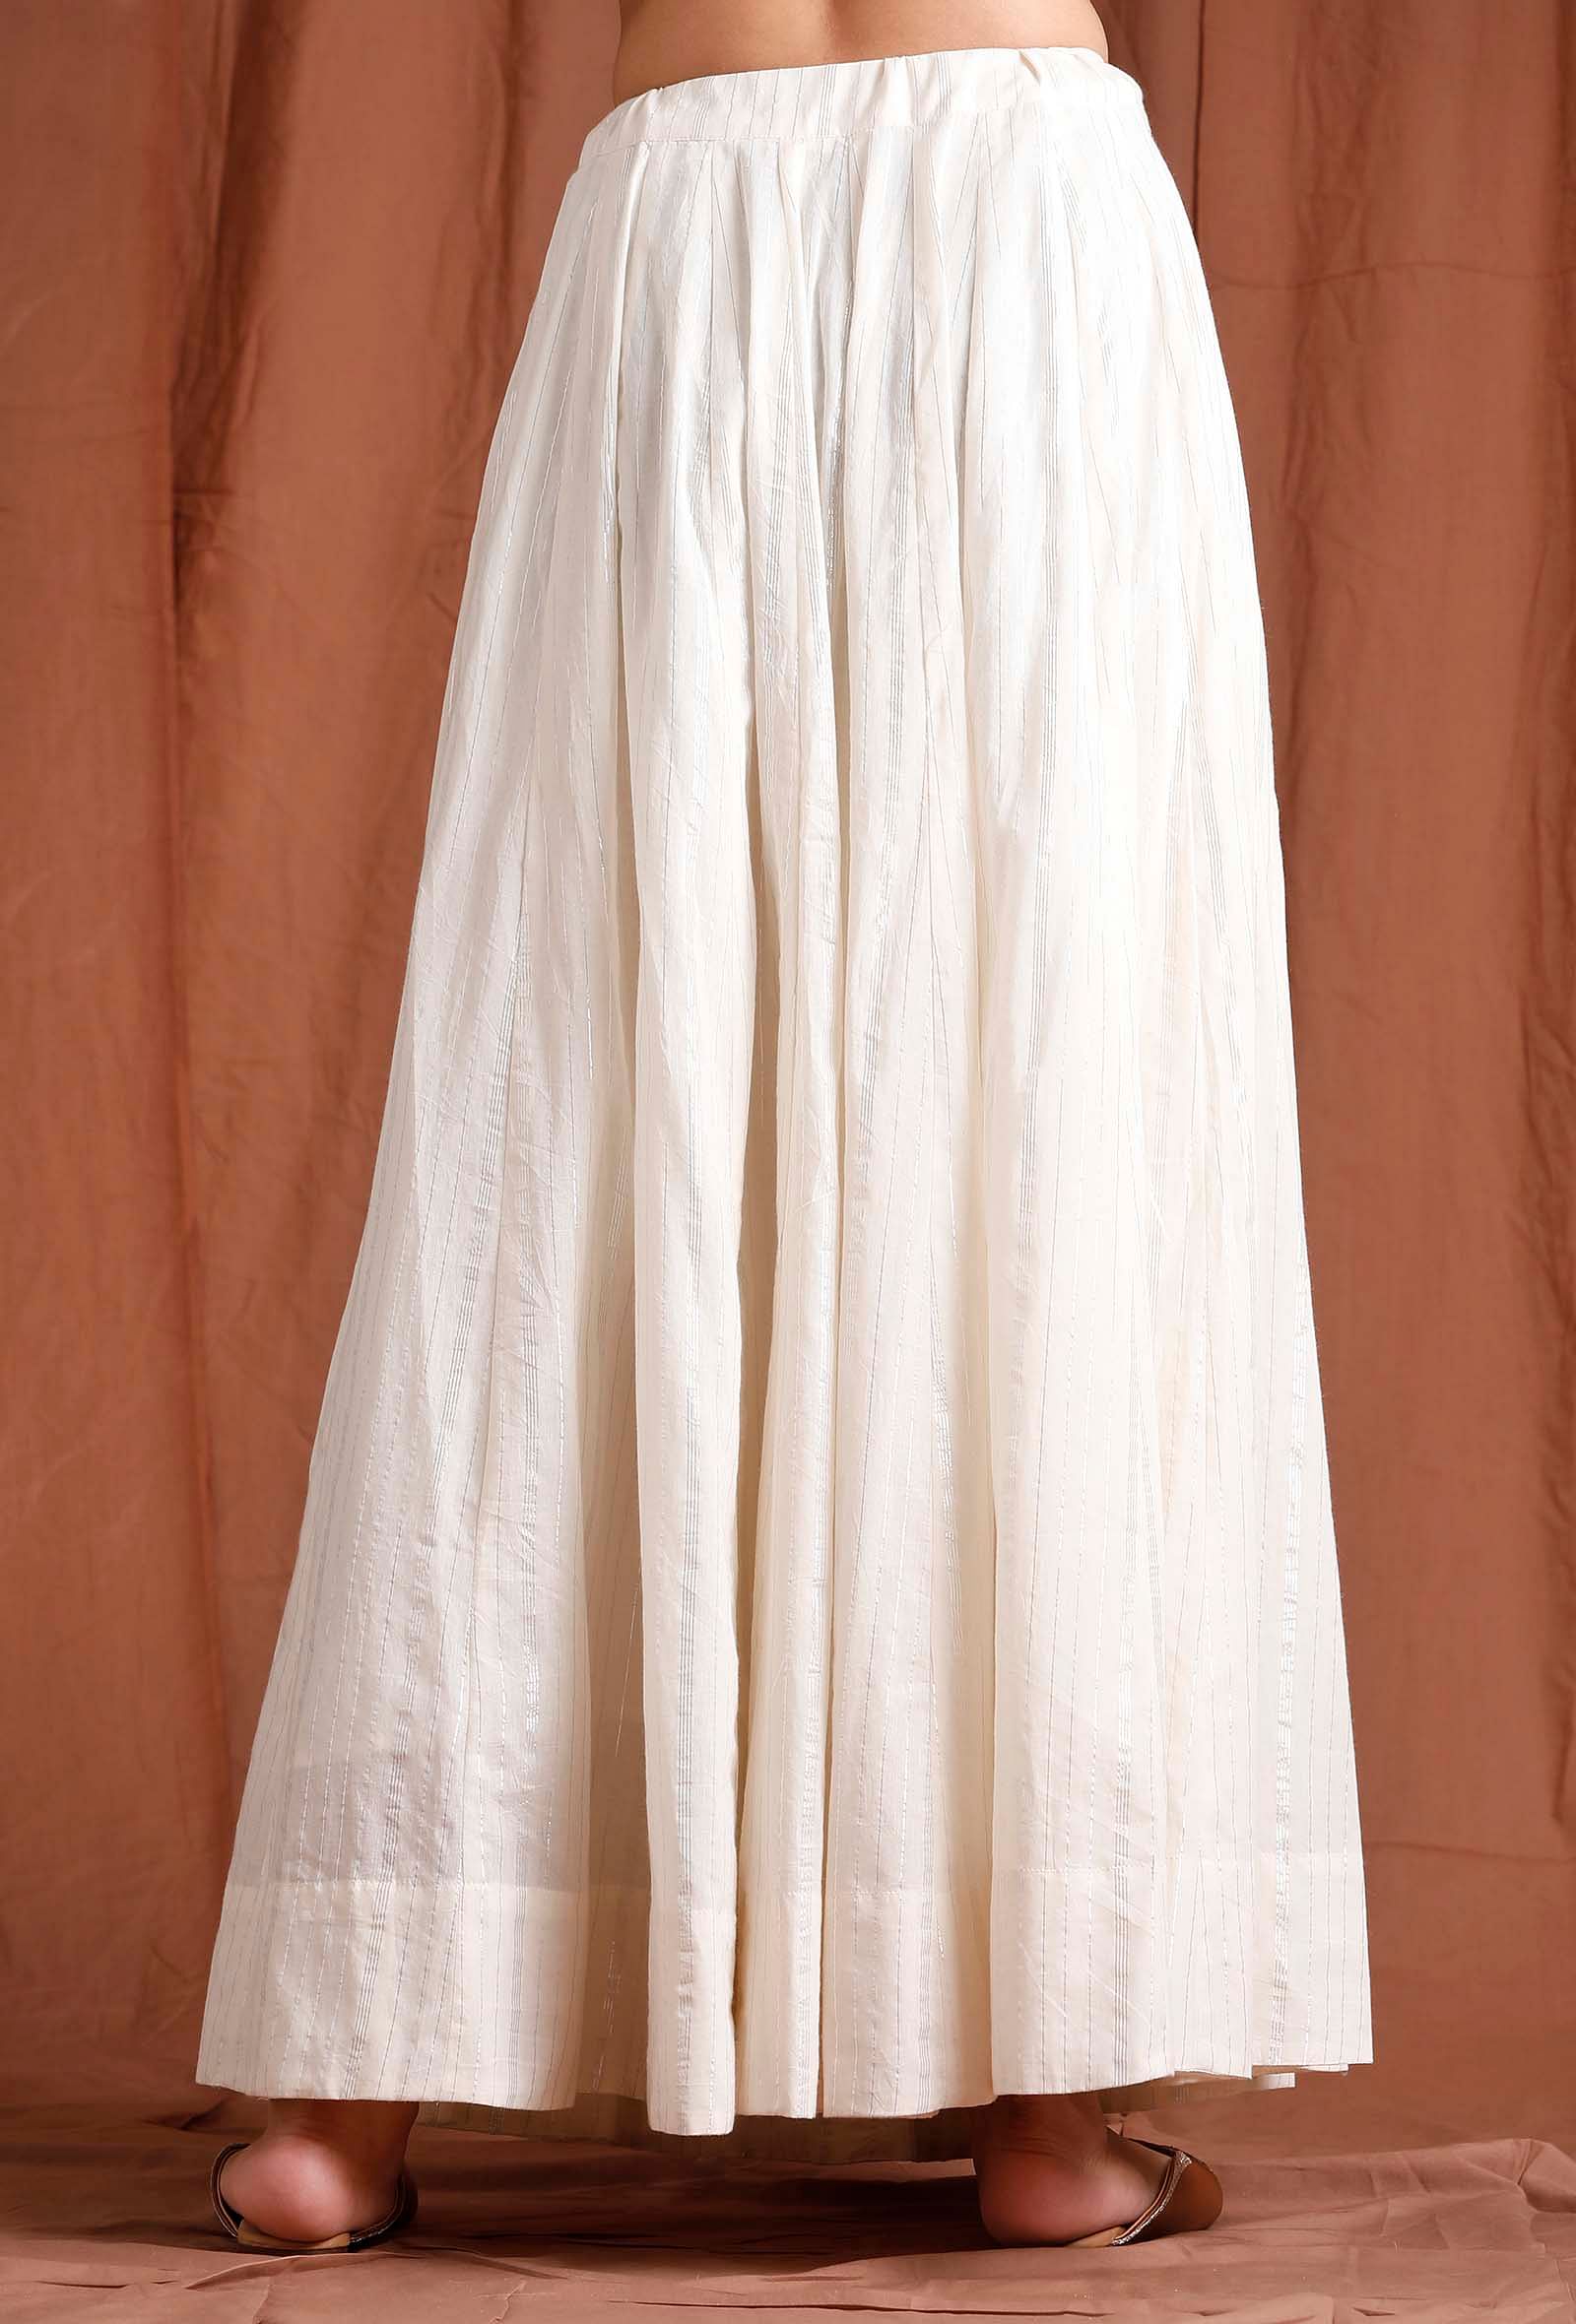 Off-White Wrap Maxi Skirt • Handmade Boho Long Skirt • Long Cotton Skirt |  AYA Sacred Wear